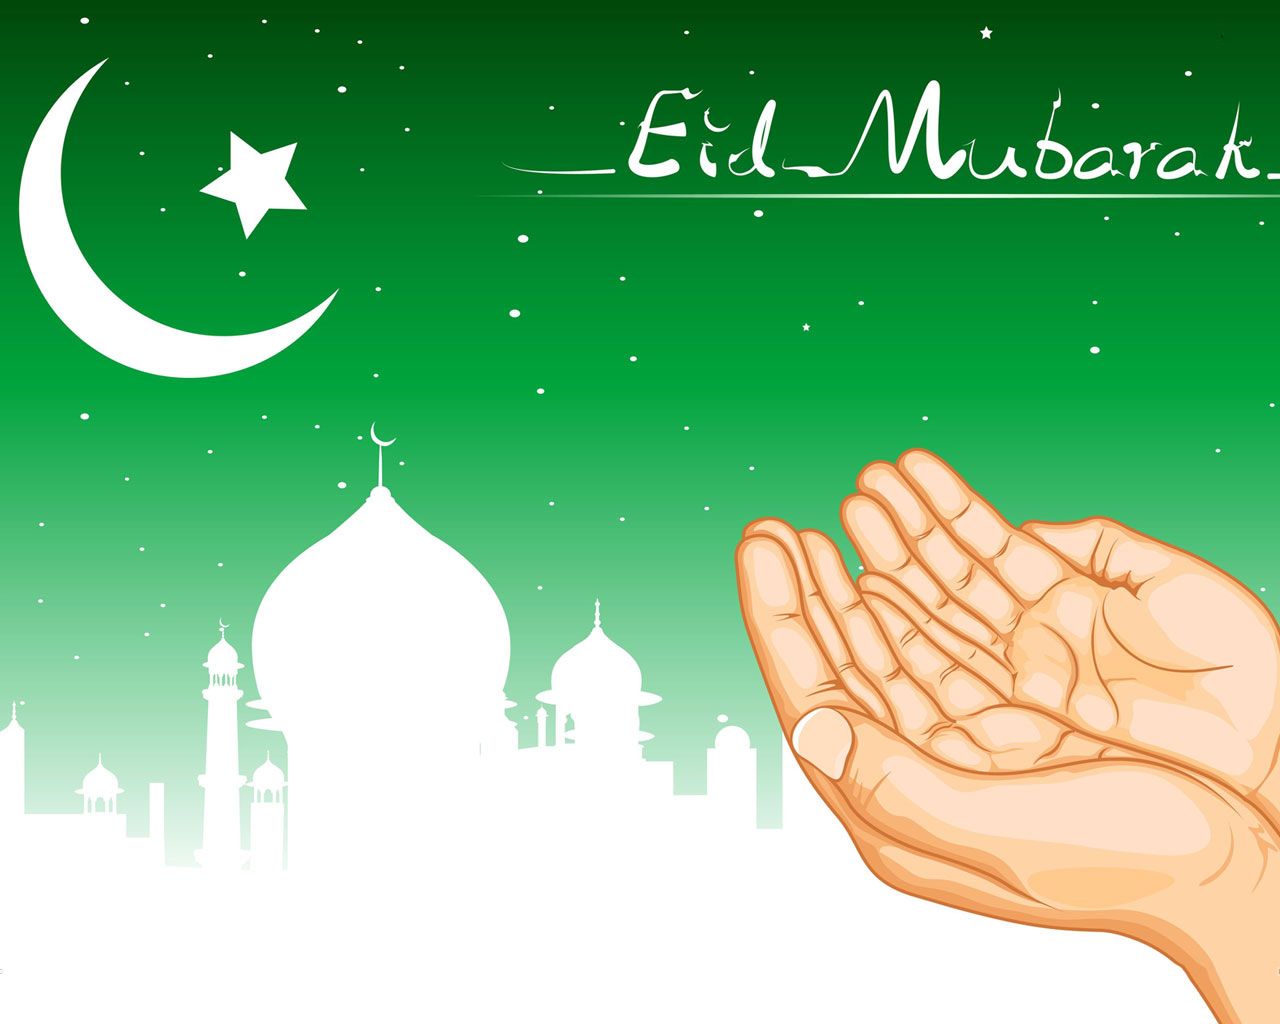 EID MUBARAK TO ALL. Eid mubarak image, Eid mubarak wishes, Eid ul fitr image